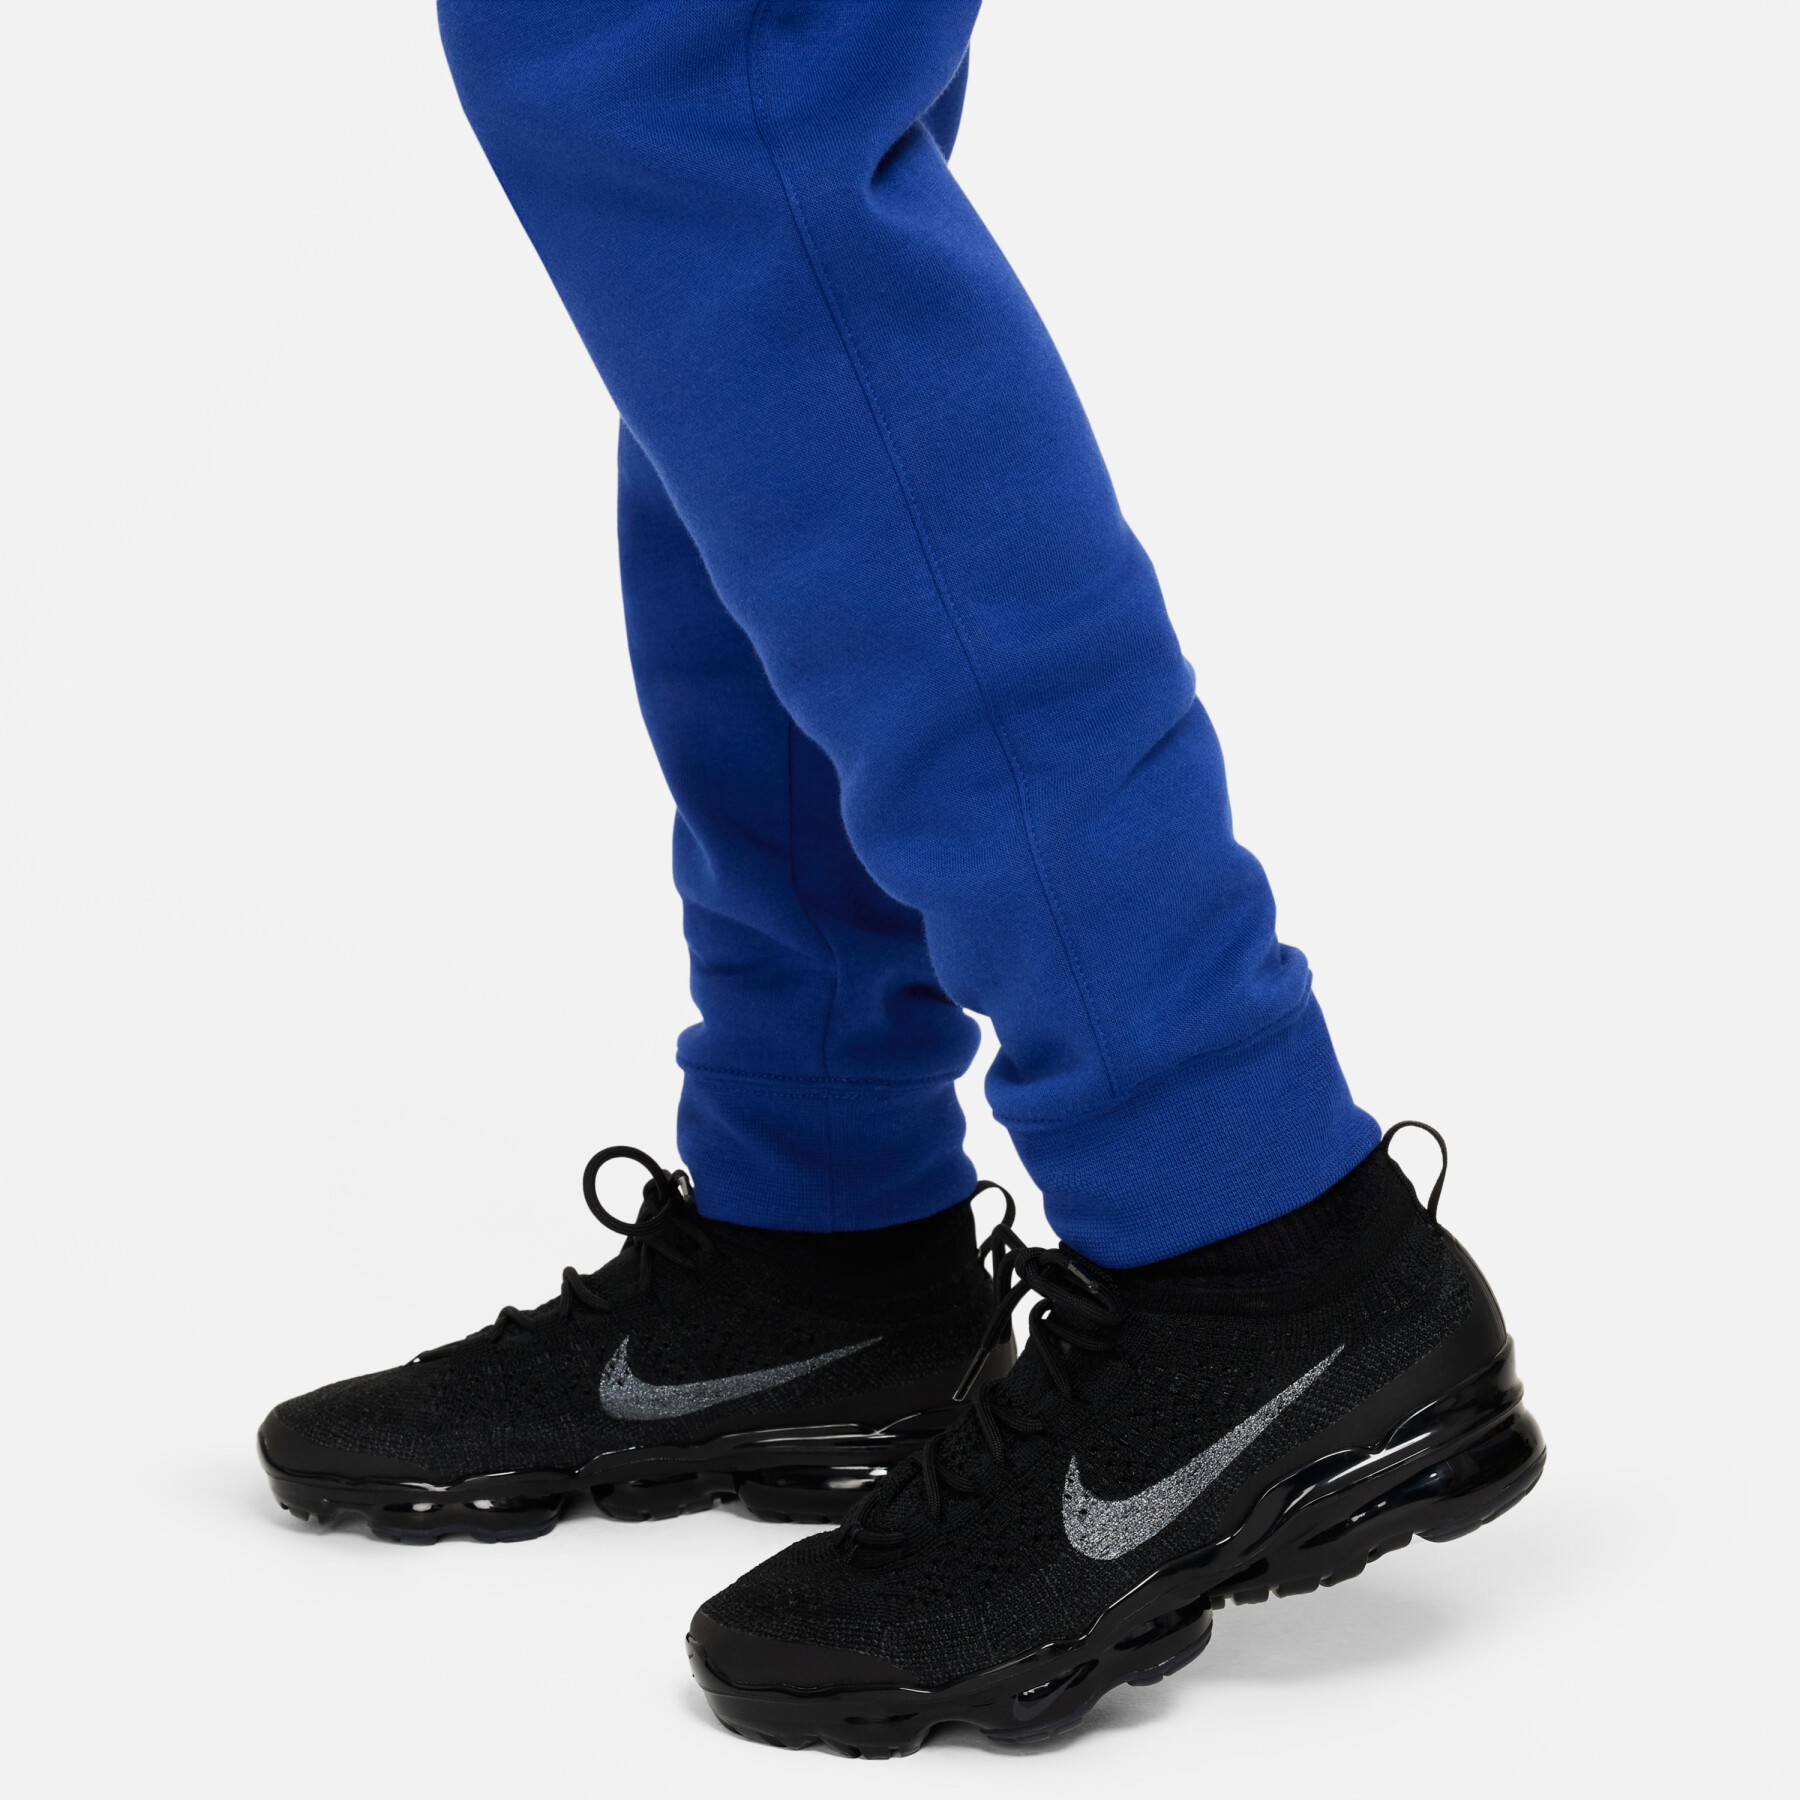 Pantalon cargo enfant Nike Fleece